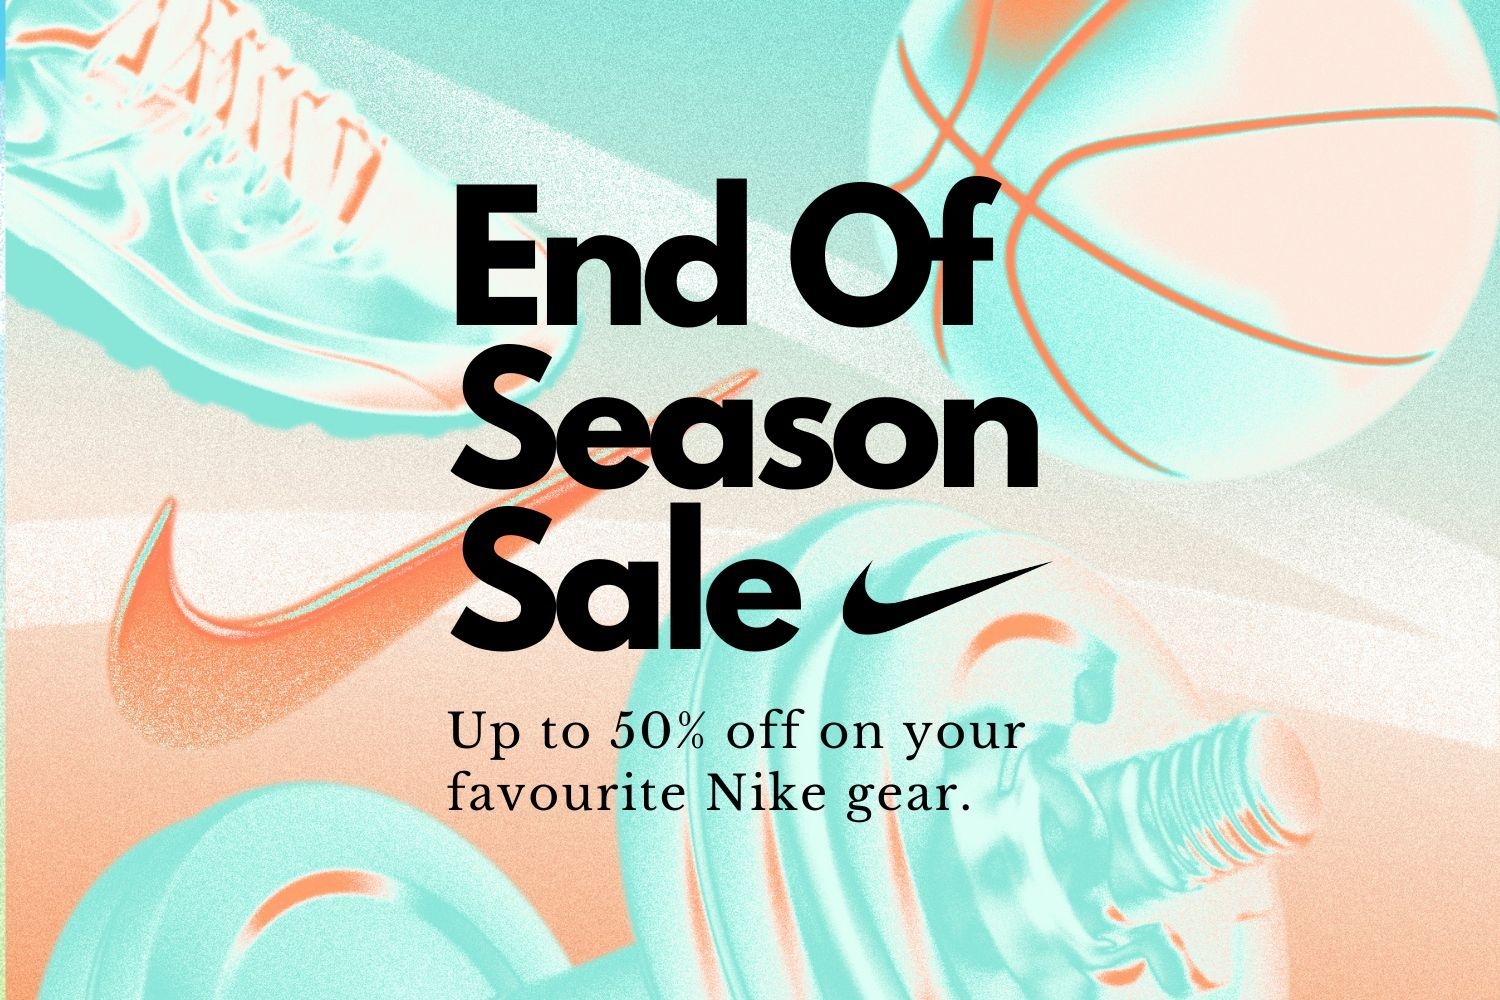 Der Nike End of Season Sale kommt mit bis zu 50% Rabatt